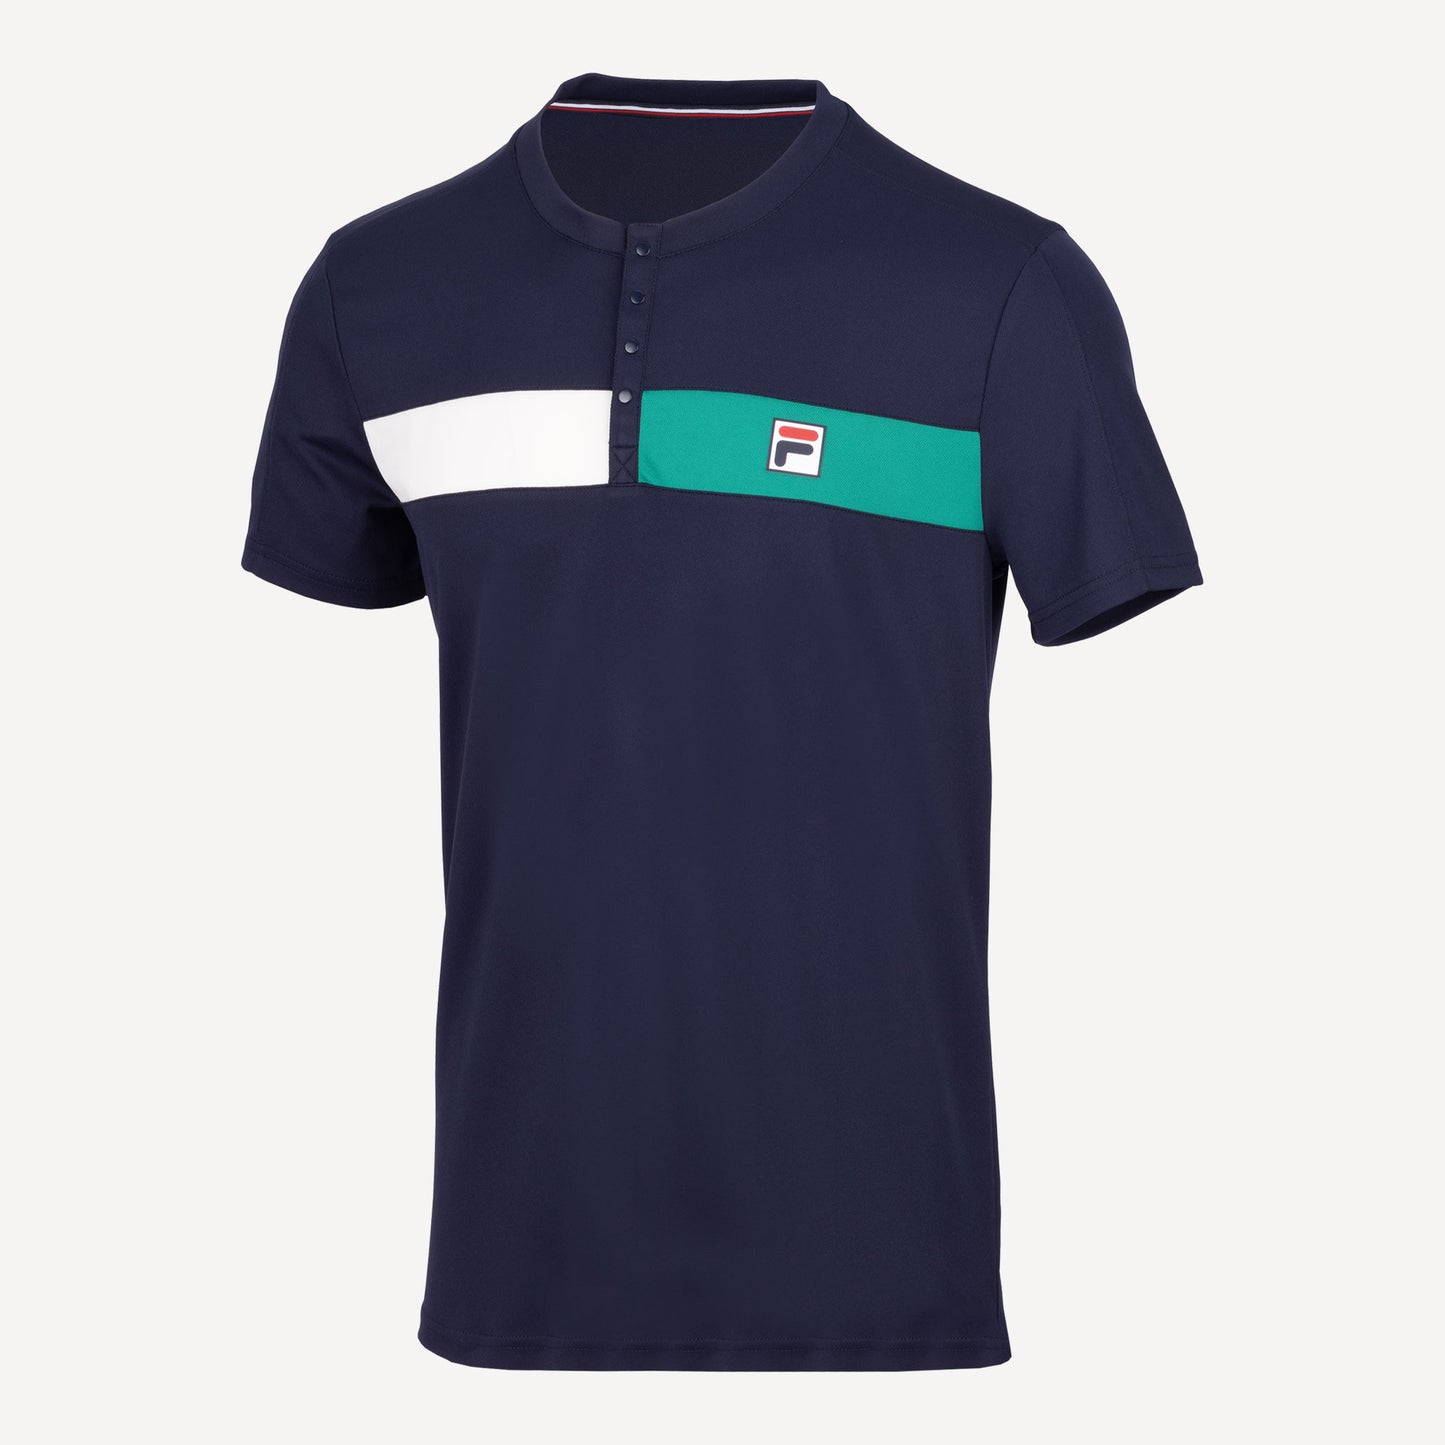 Fila Emilio Men's Tennis Shirt Dark Blue (1)